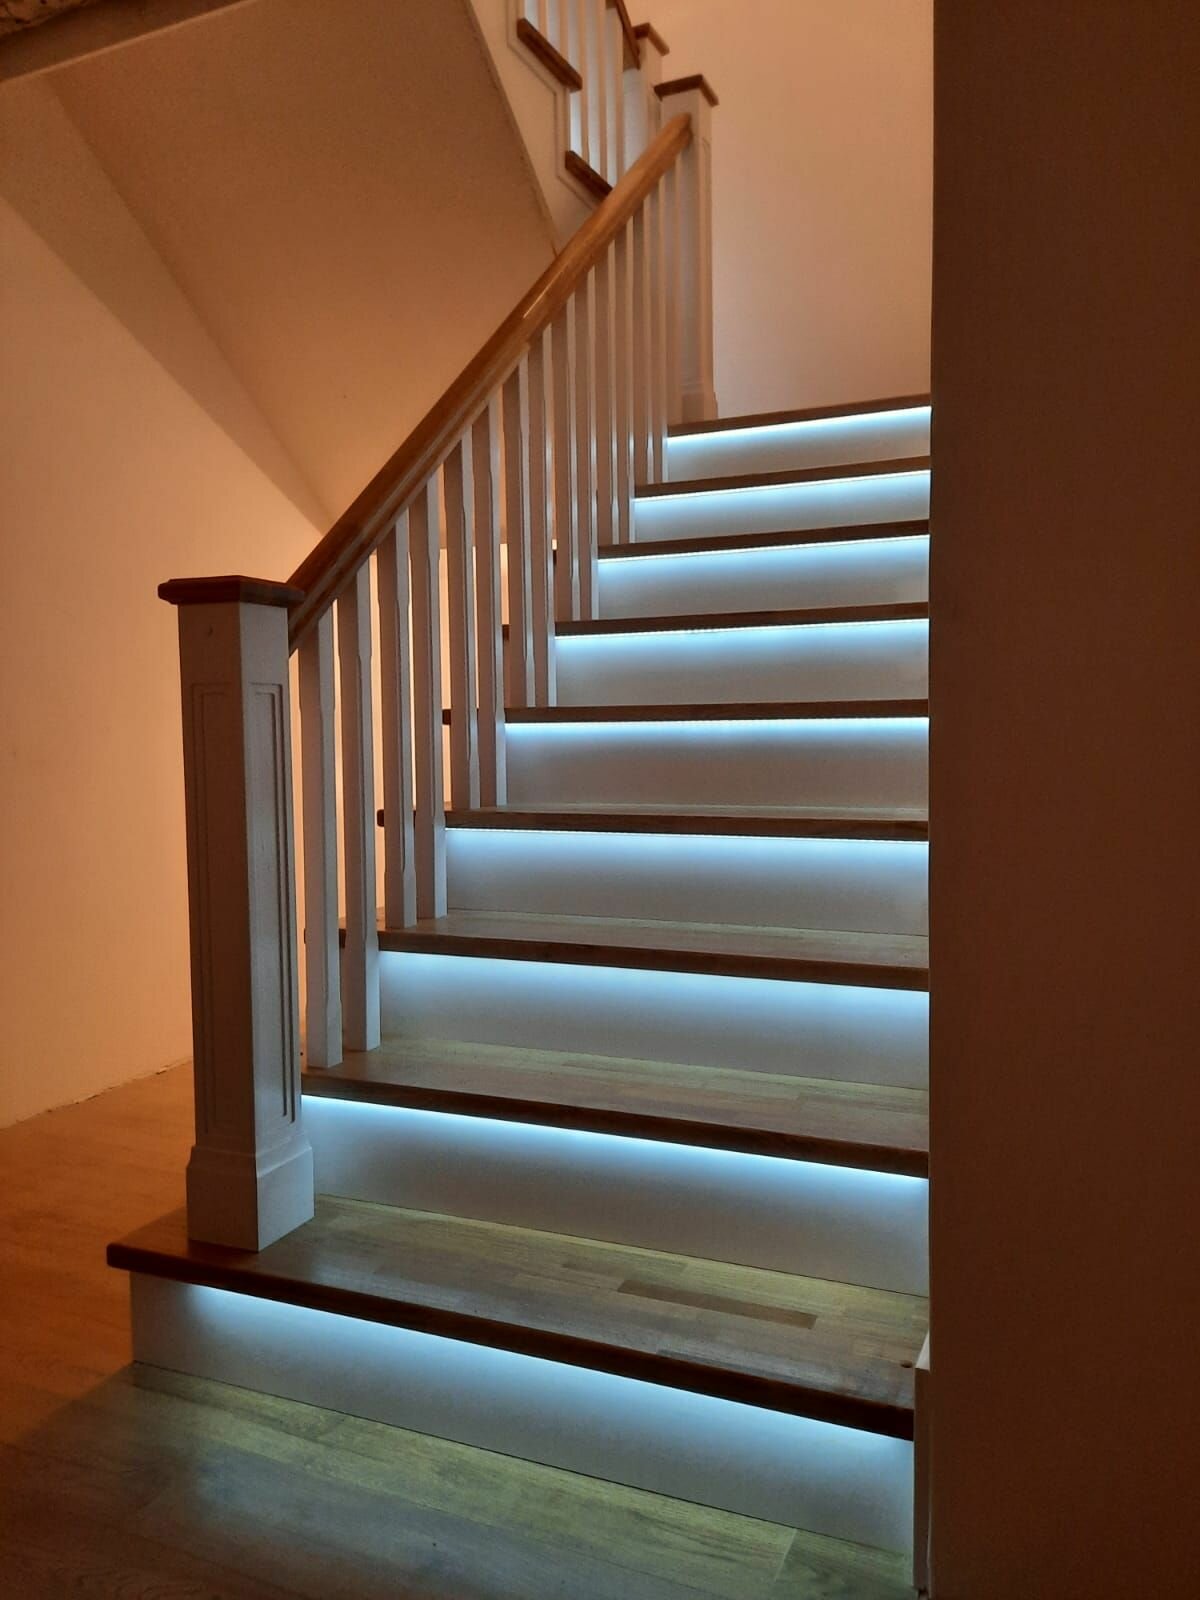 Базовый комплект автоматической подсветки лестницы с инфракрасными датчиками движения до 18 ступеней деревянные (под покраску) датчики движения